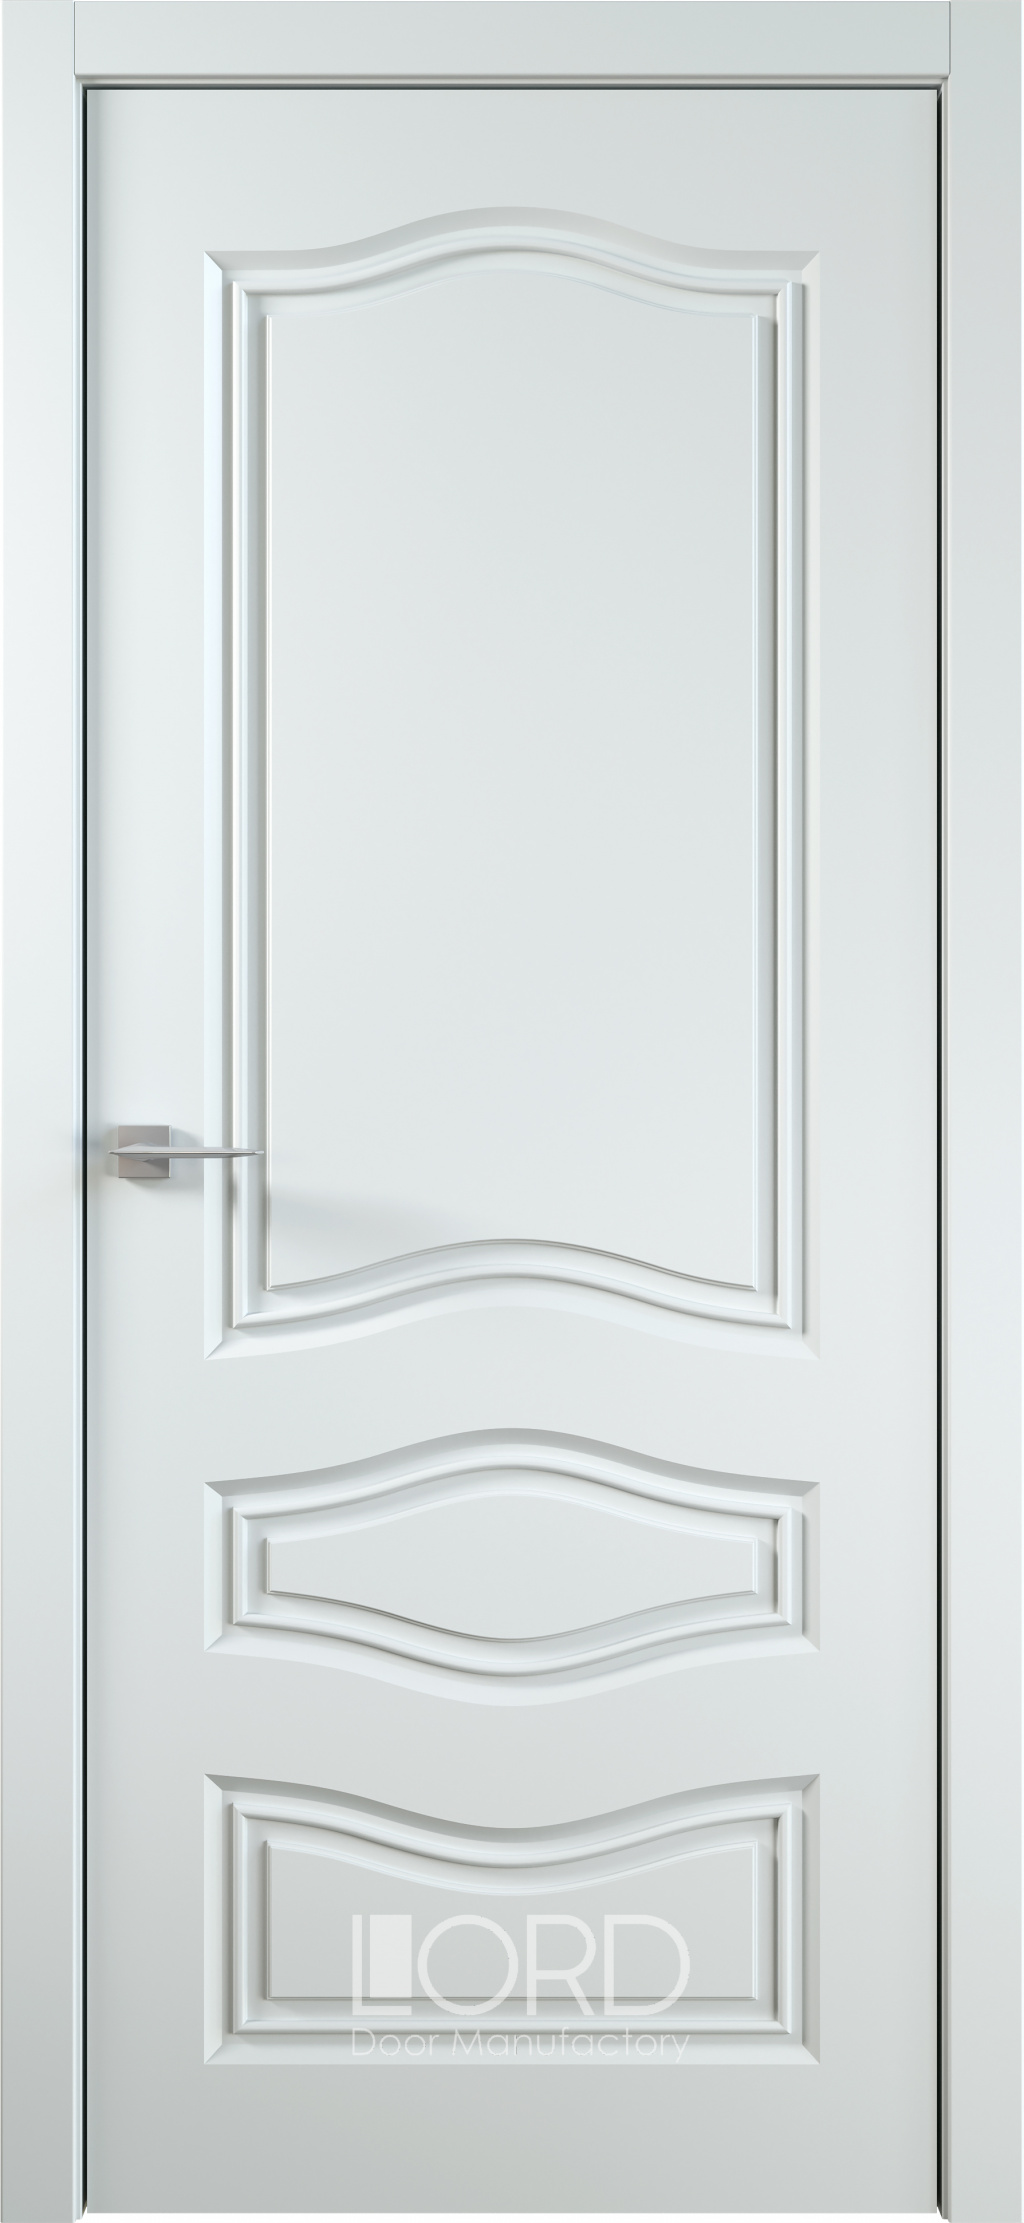 Лорд Межкомнатная дверь Ренессанс 9 ДГ, арт. 23028 - фото №1